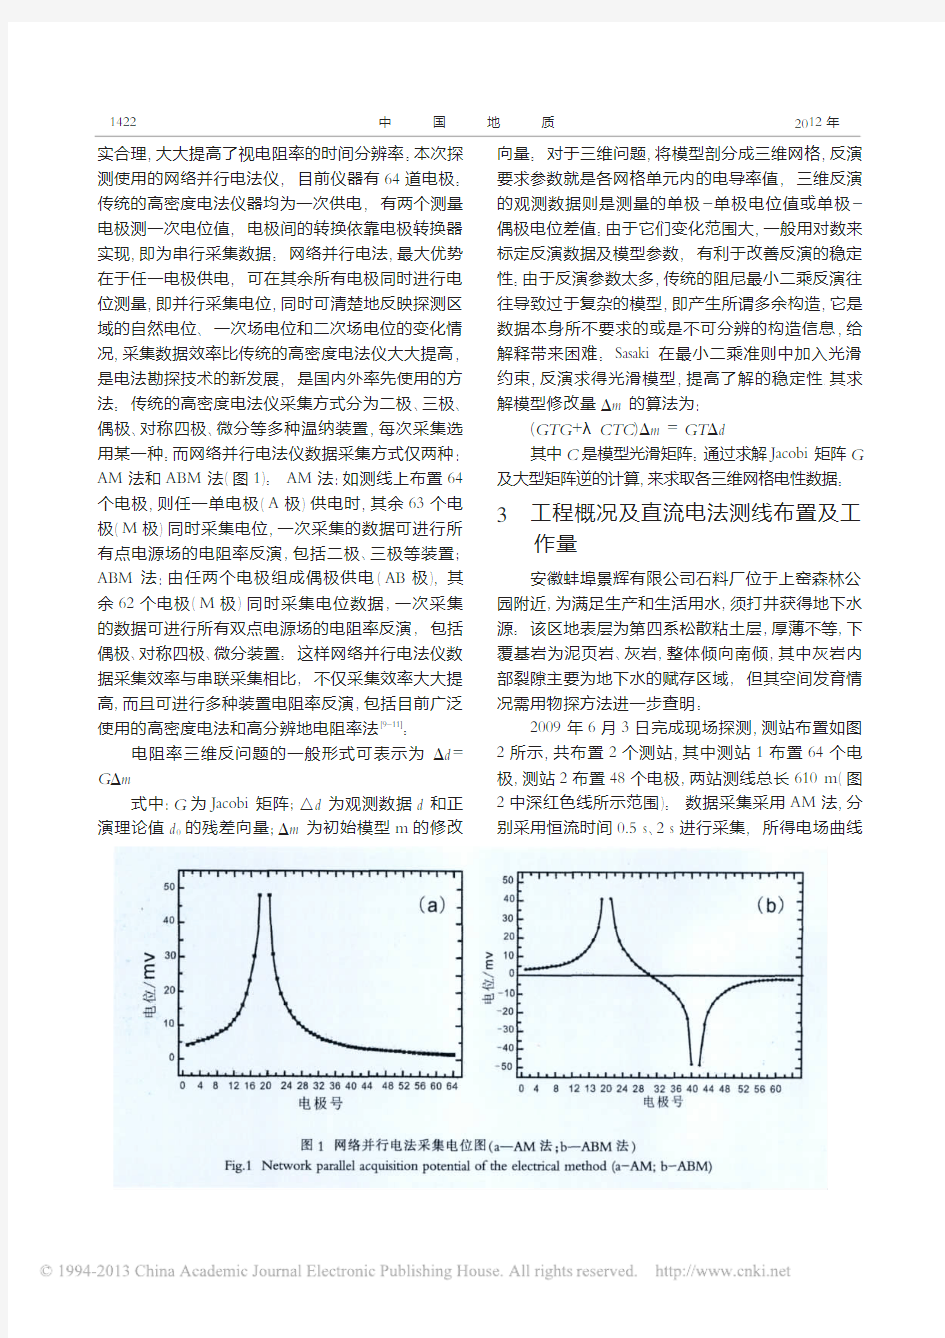 三维直流电阻率法在水源井探测中的应用研究_刘向红